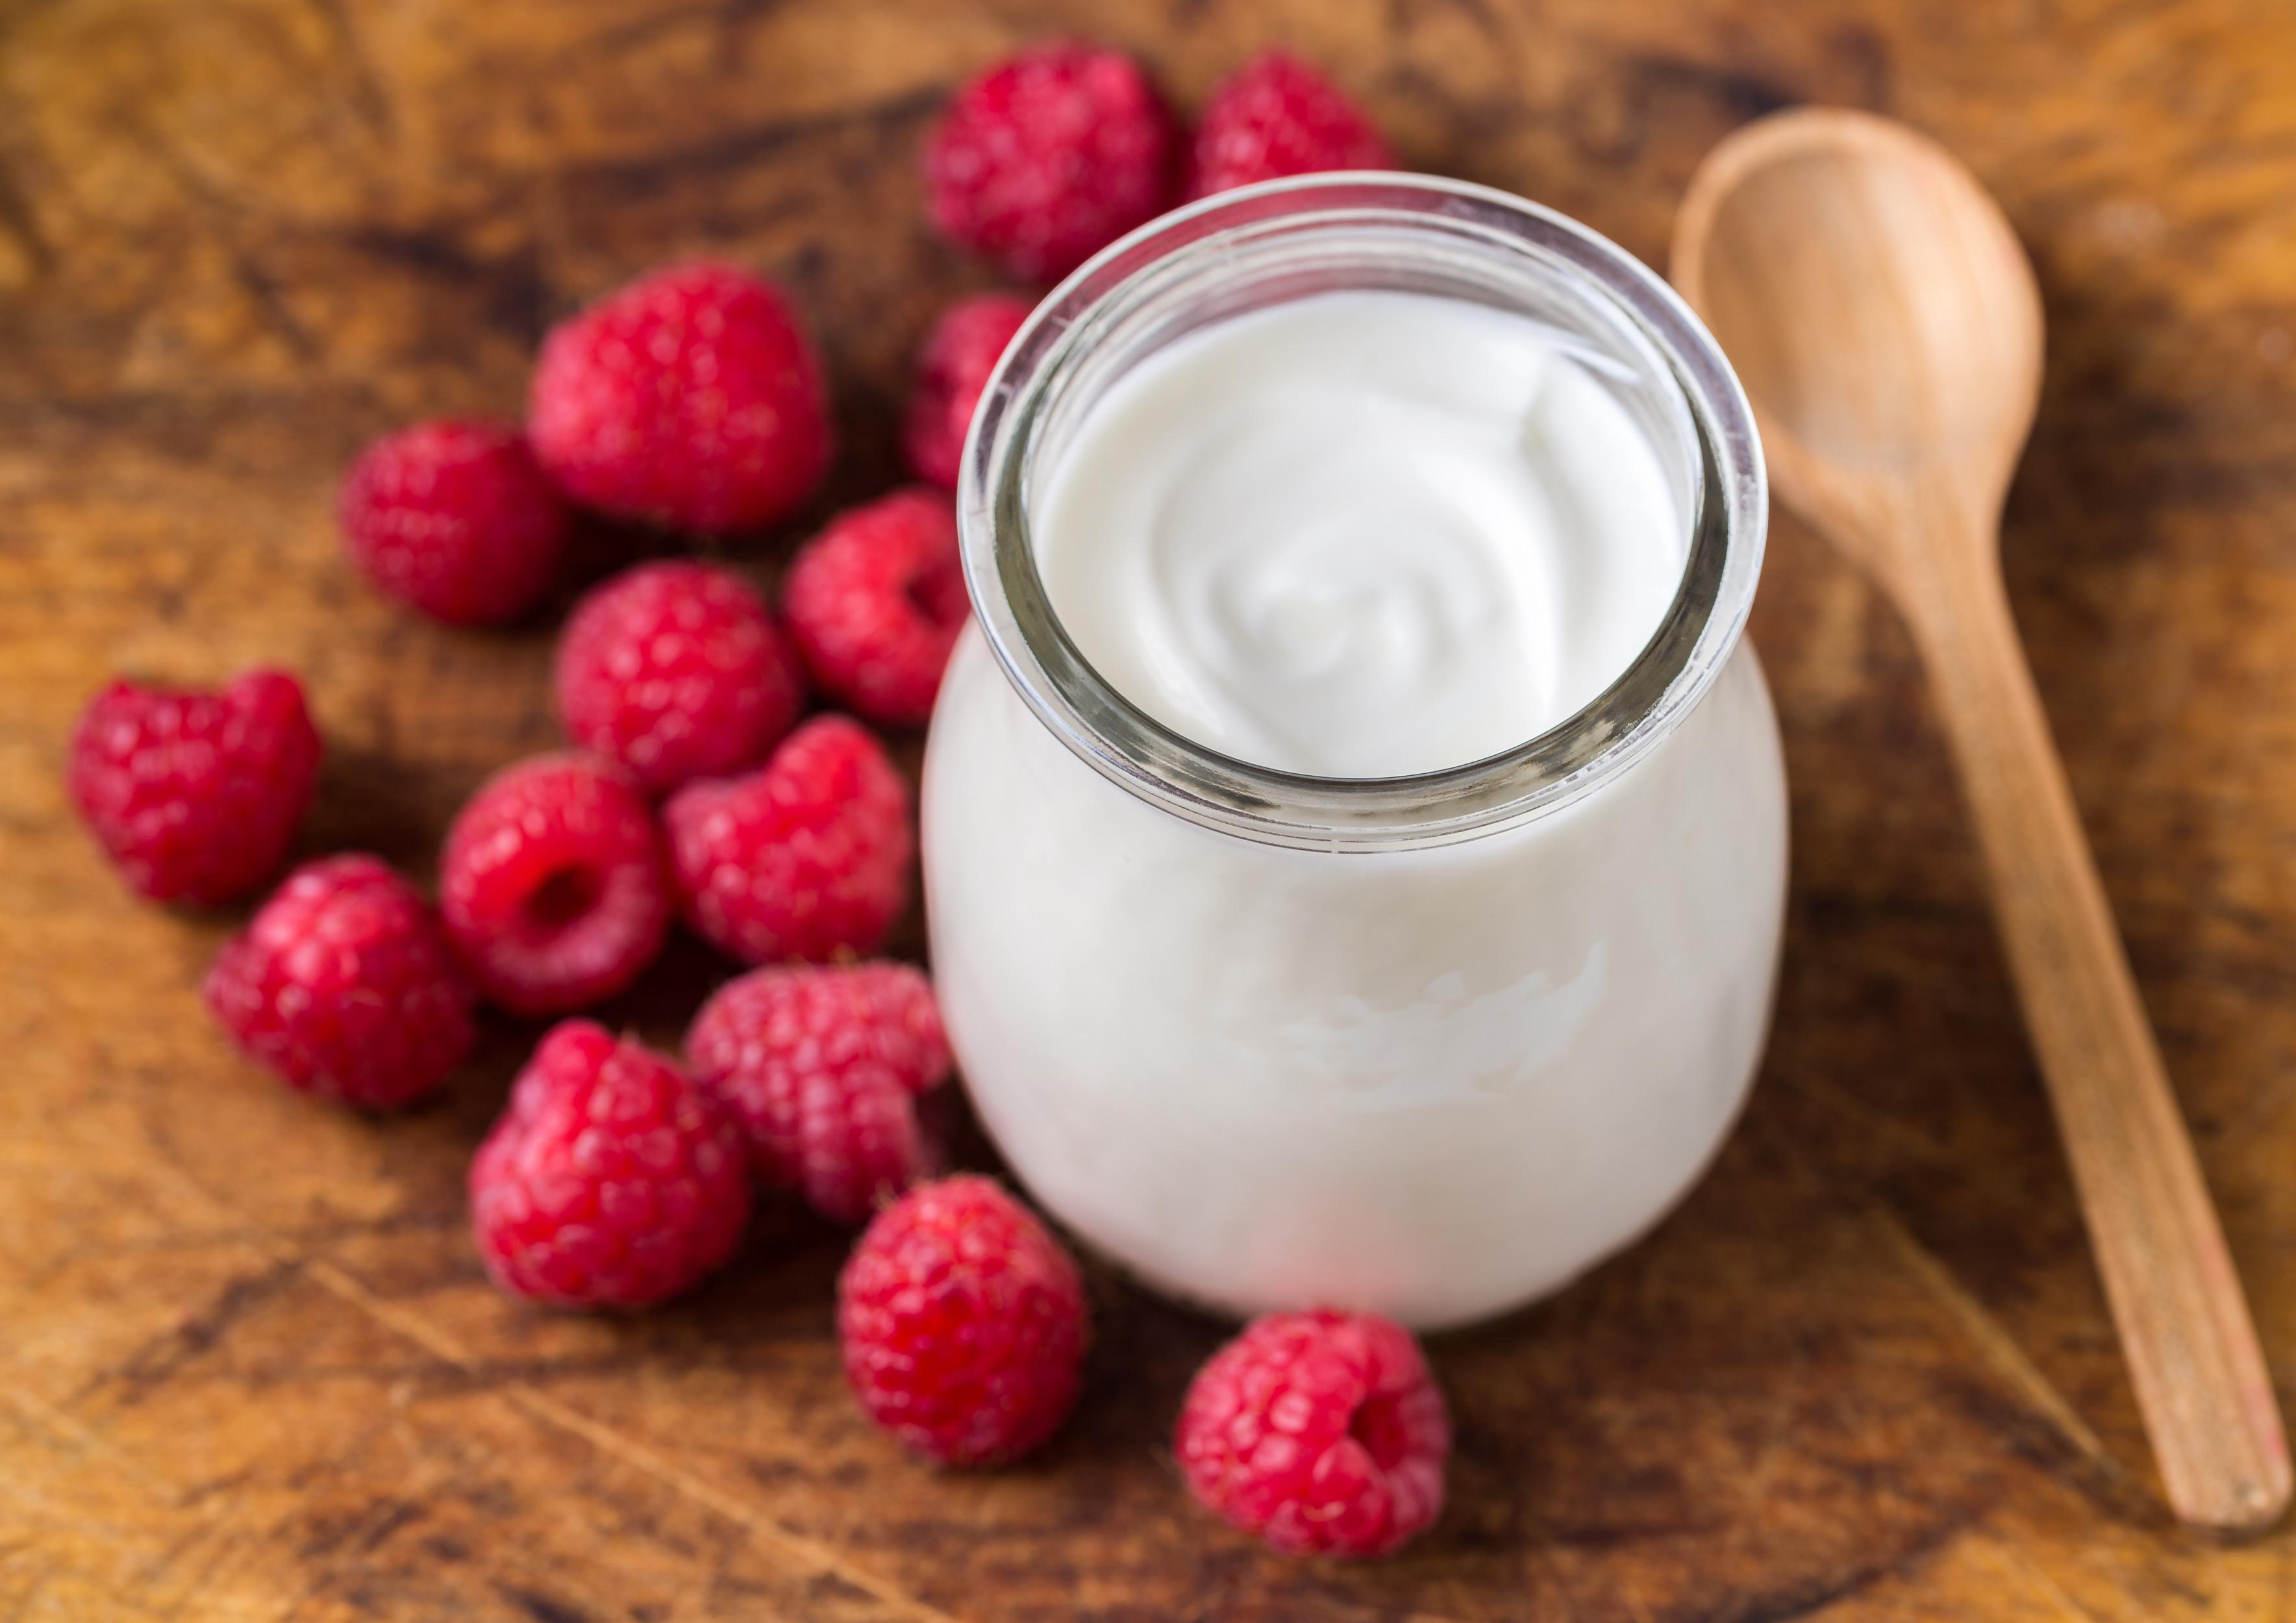 um iogurte, sendo processado, pode ser saudável? sai uma colher cheia de explicações